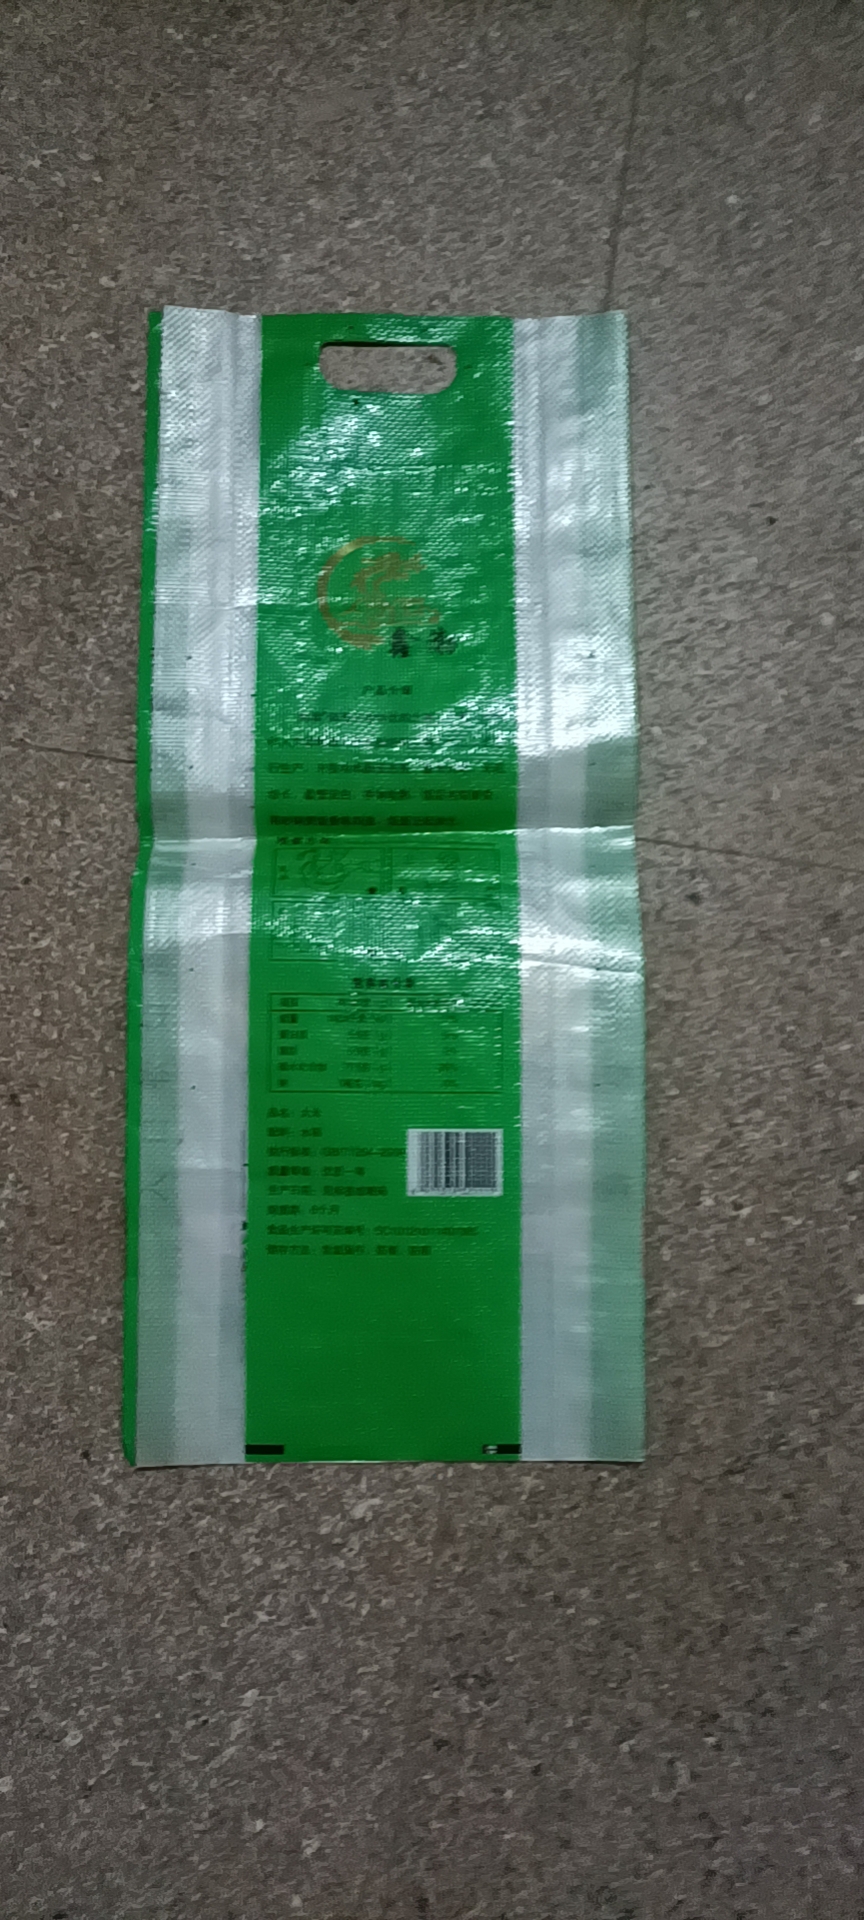 上海塑胶复合包装袋批发价格_厂价出售【合肥市富祥编织袋有限公司】